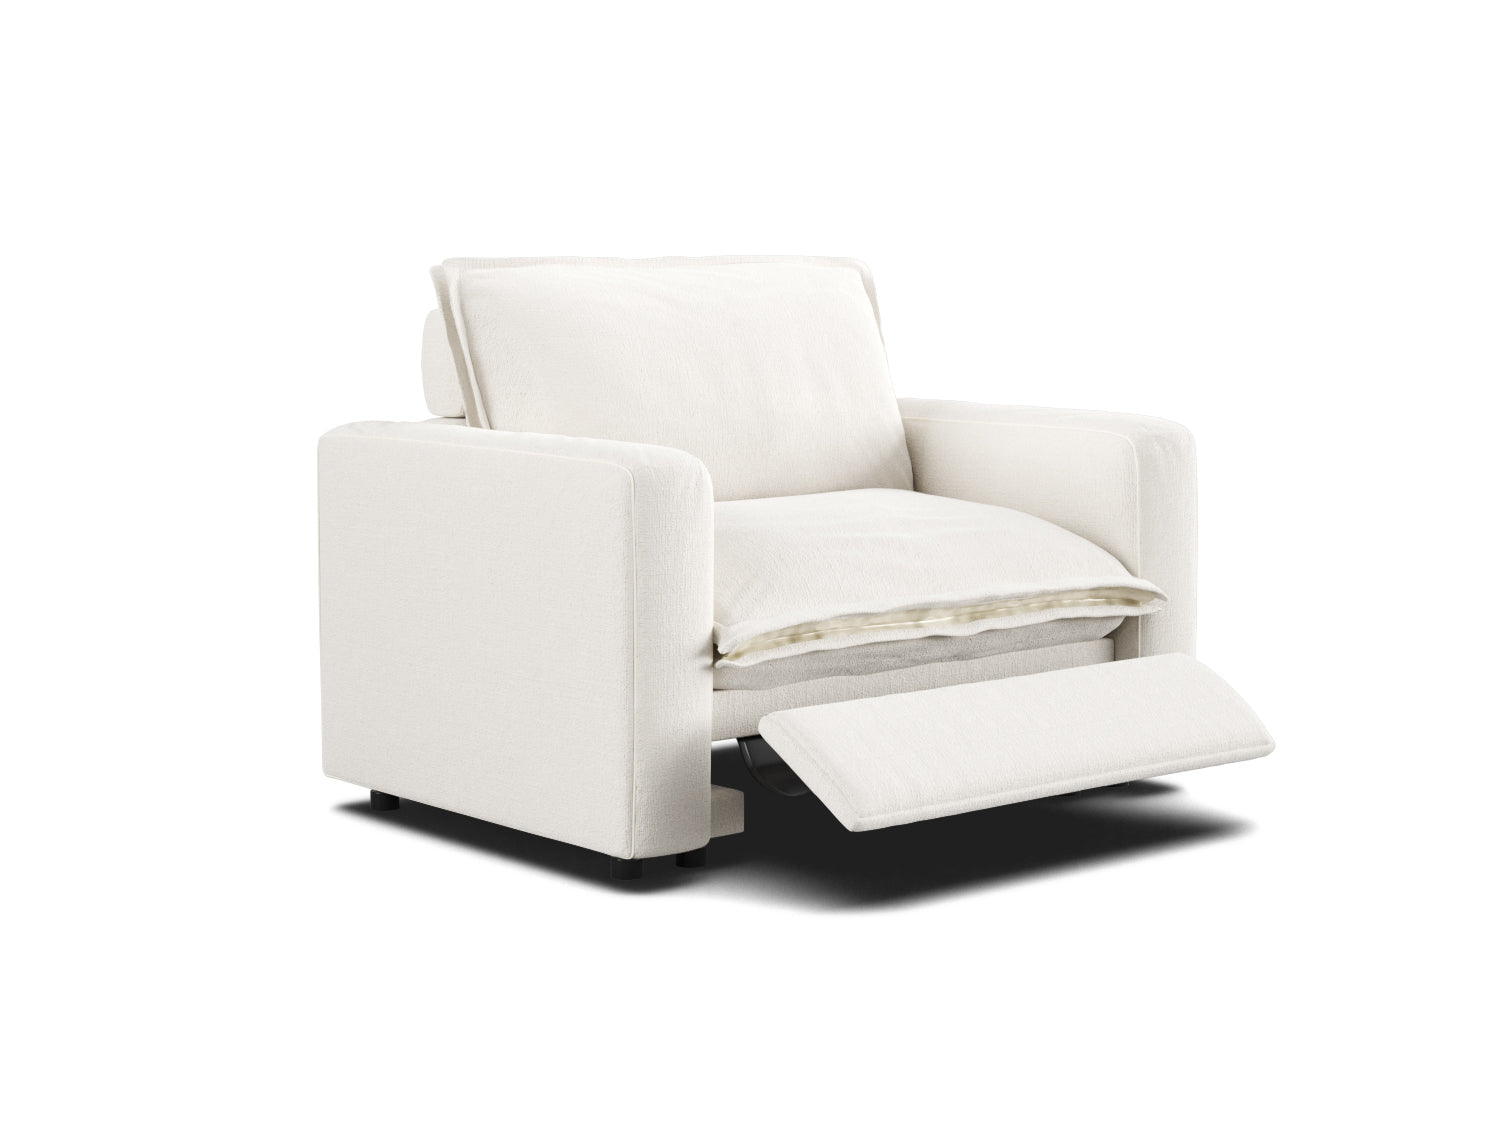 Recliner chair, fabric, modular, wall hugger